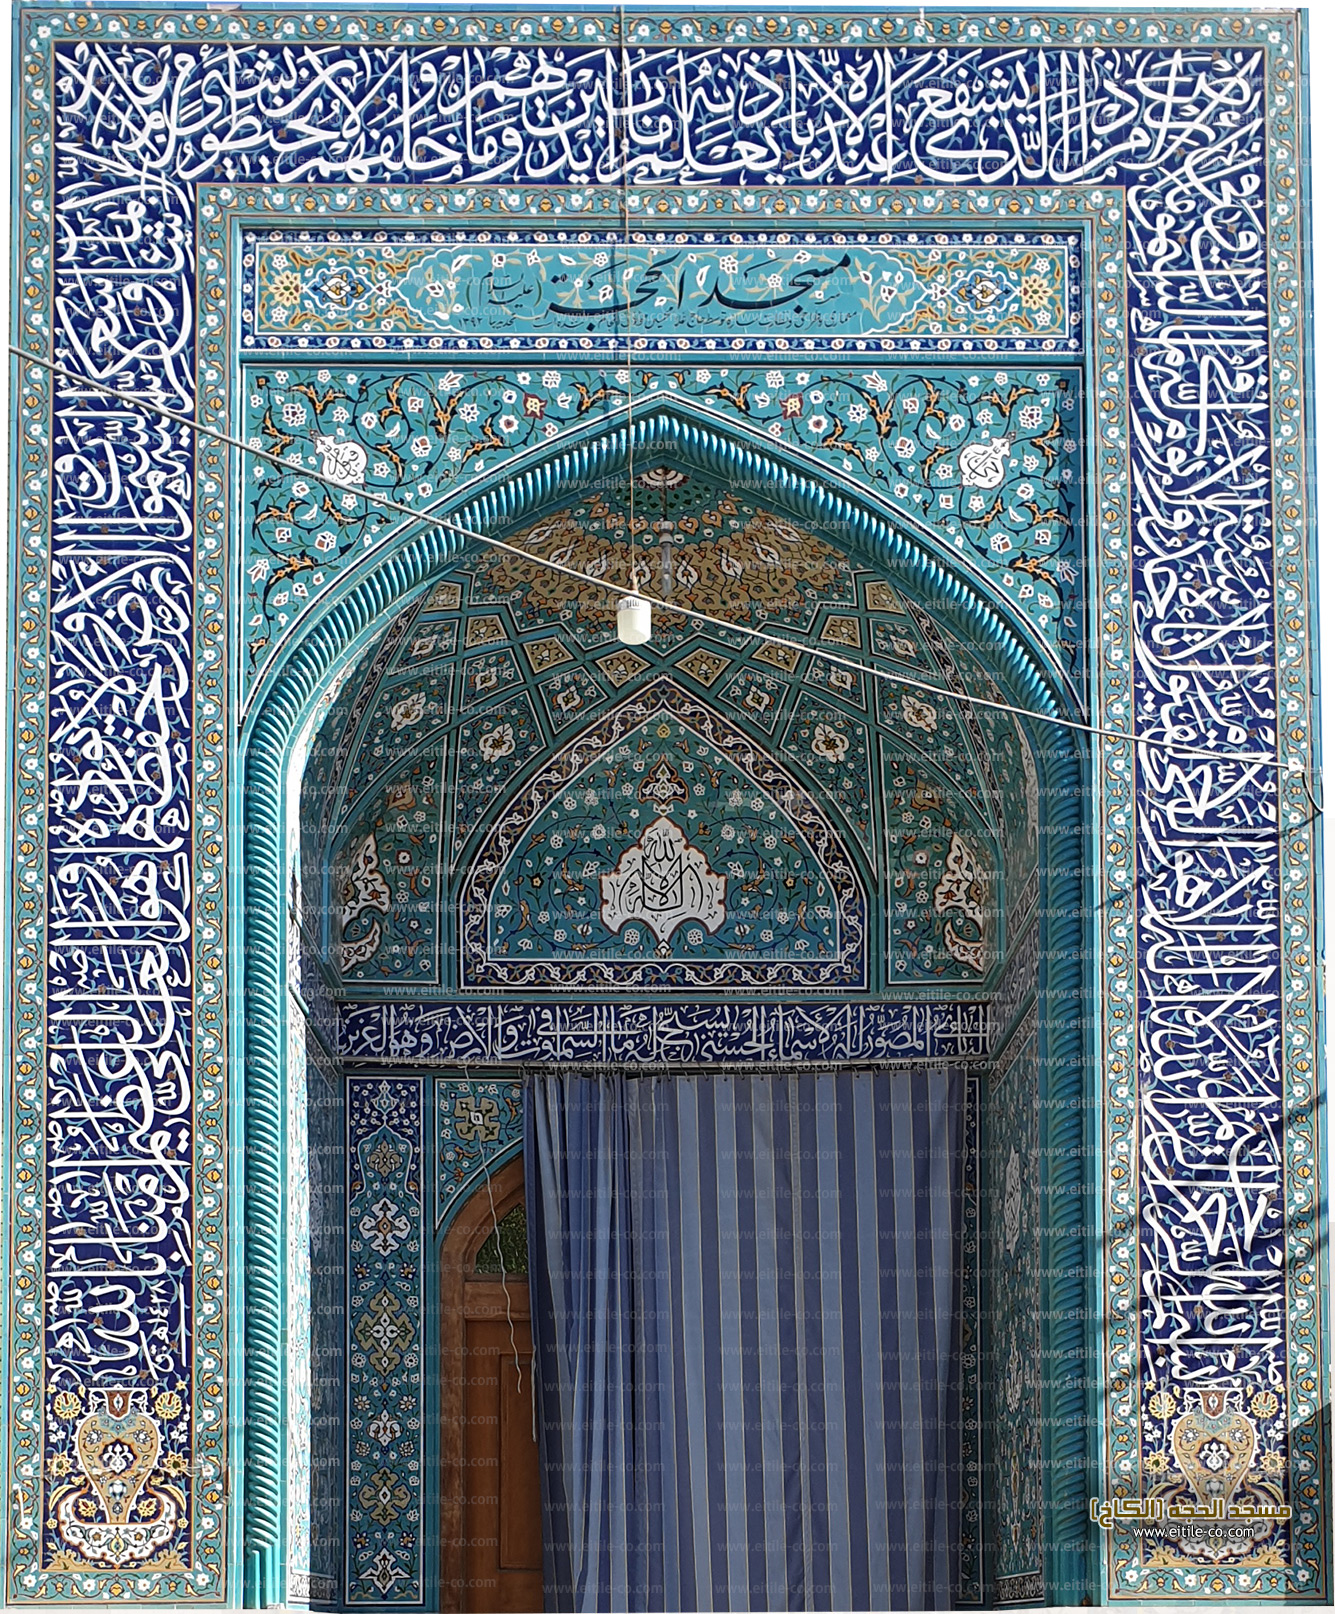 Mosque tile supplier، www.eitile-co.com